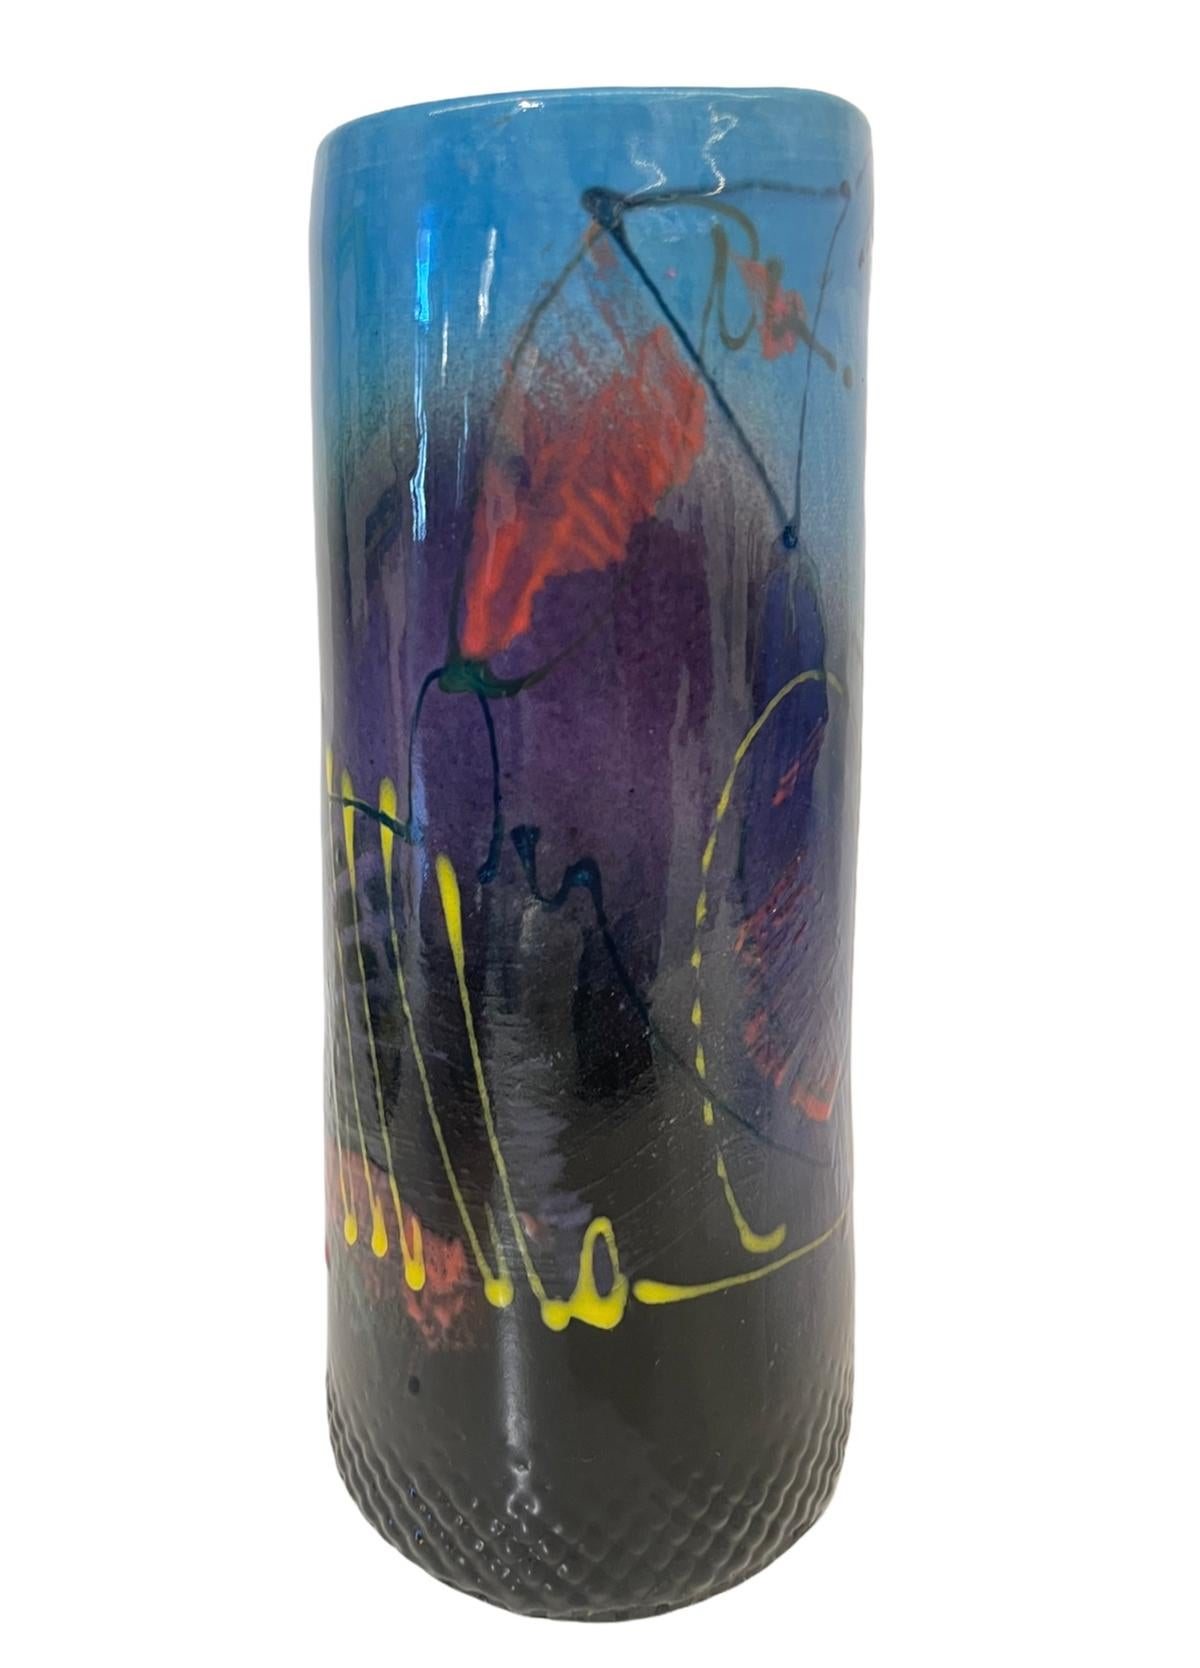 Measures: 6” height x 3.5” diameter

Beautiful signed postmodern vase.